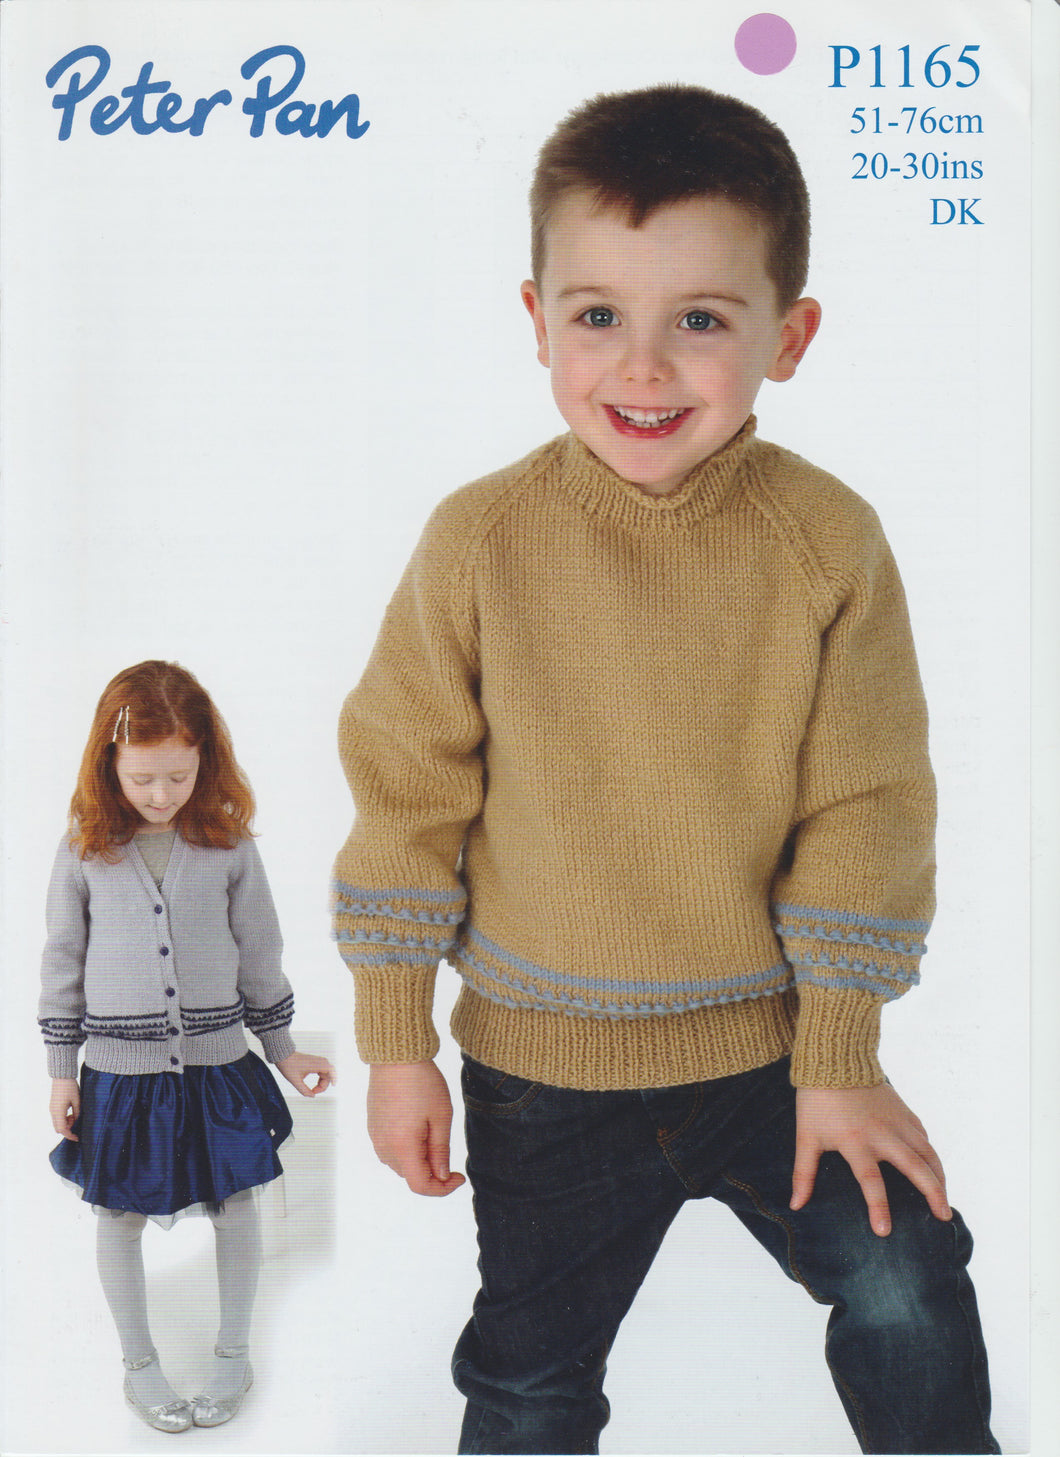 Knitting Pattern Leaflet Peter Pan P1165 DK Baby Kids Raglan Sweater Cardigan